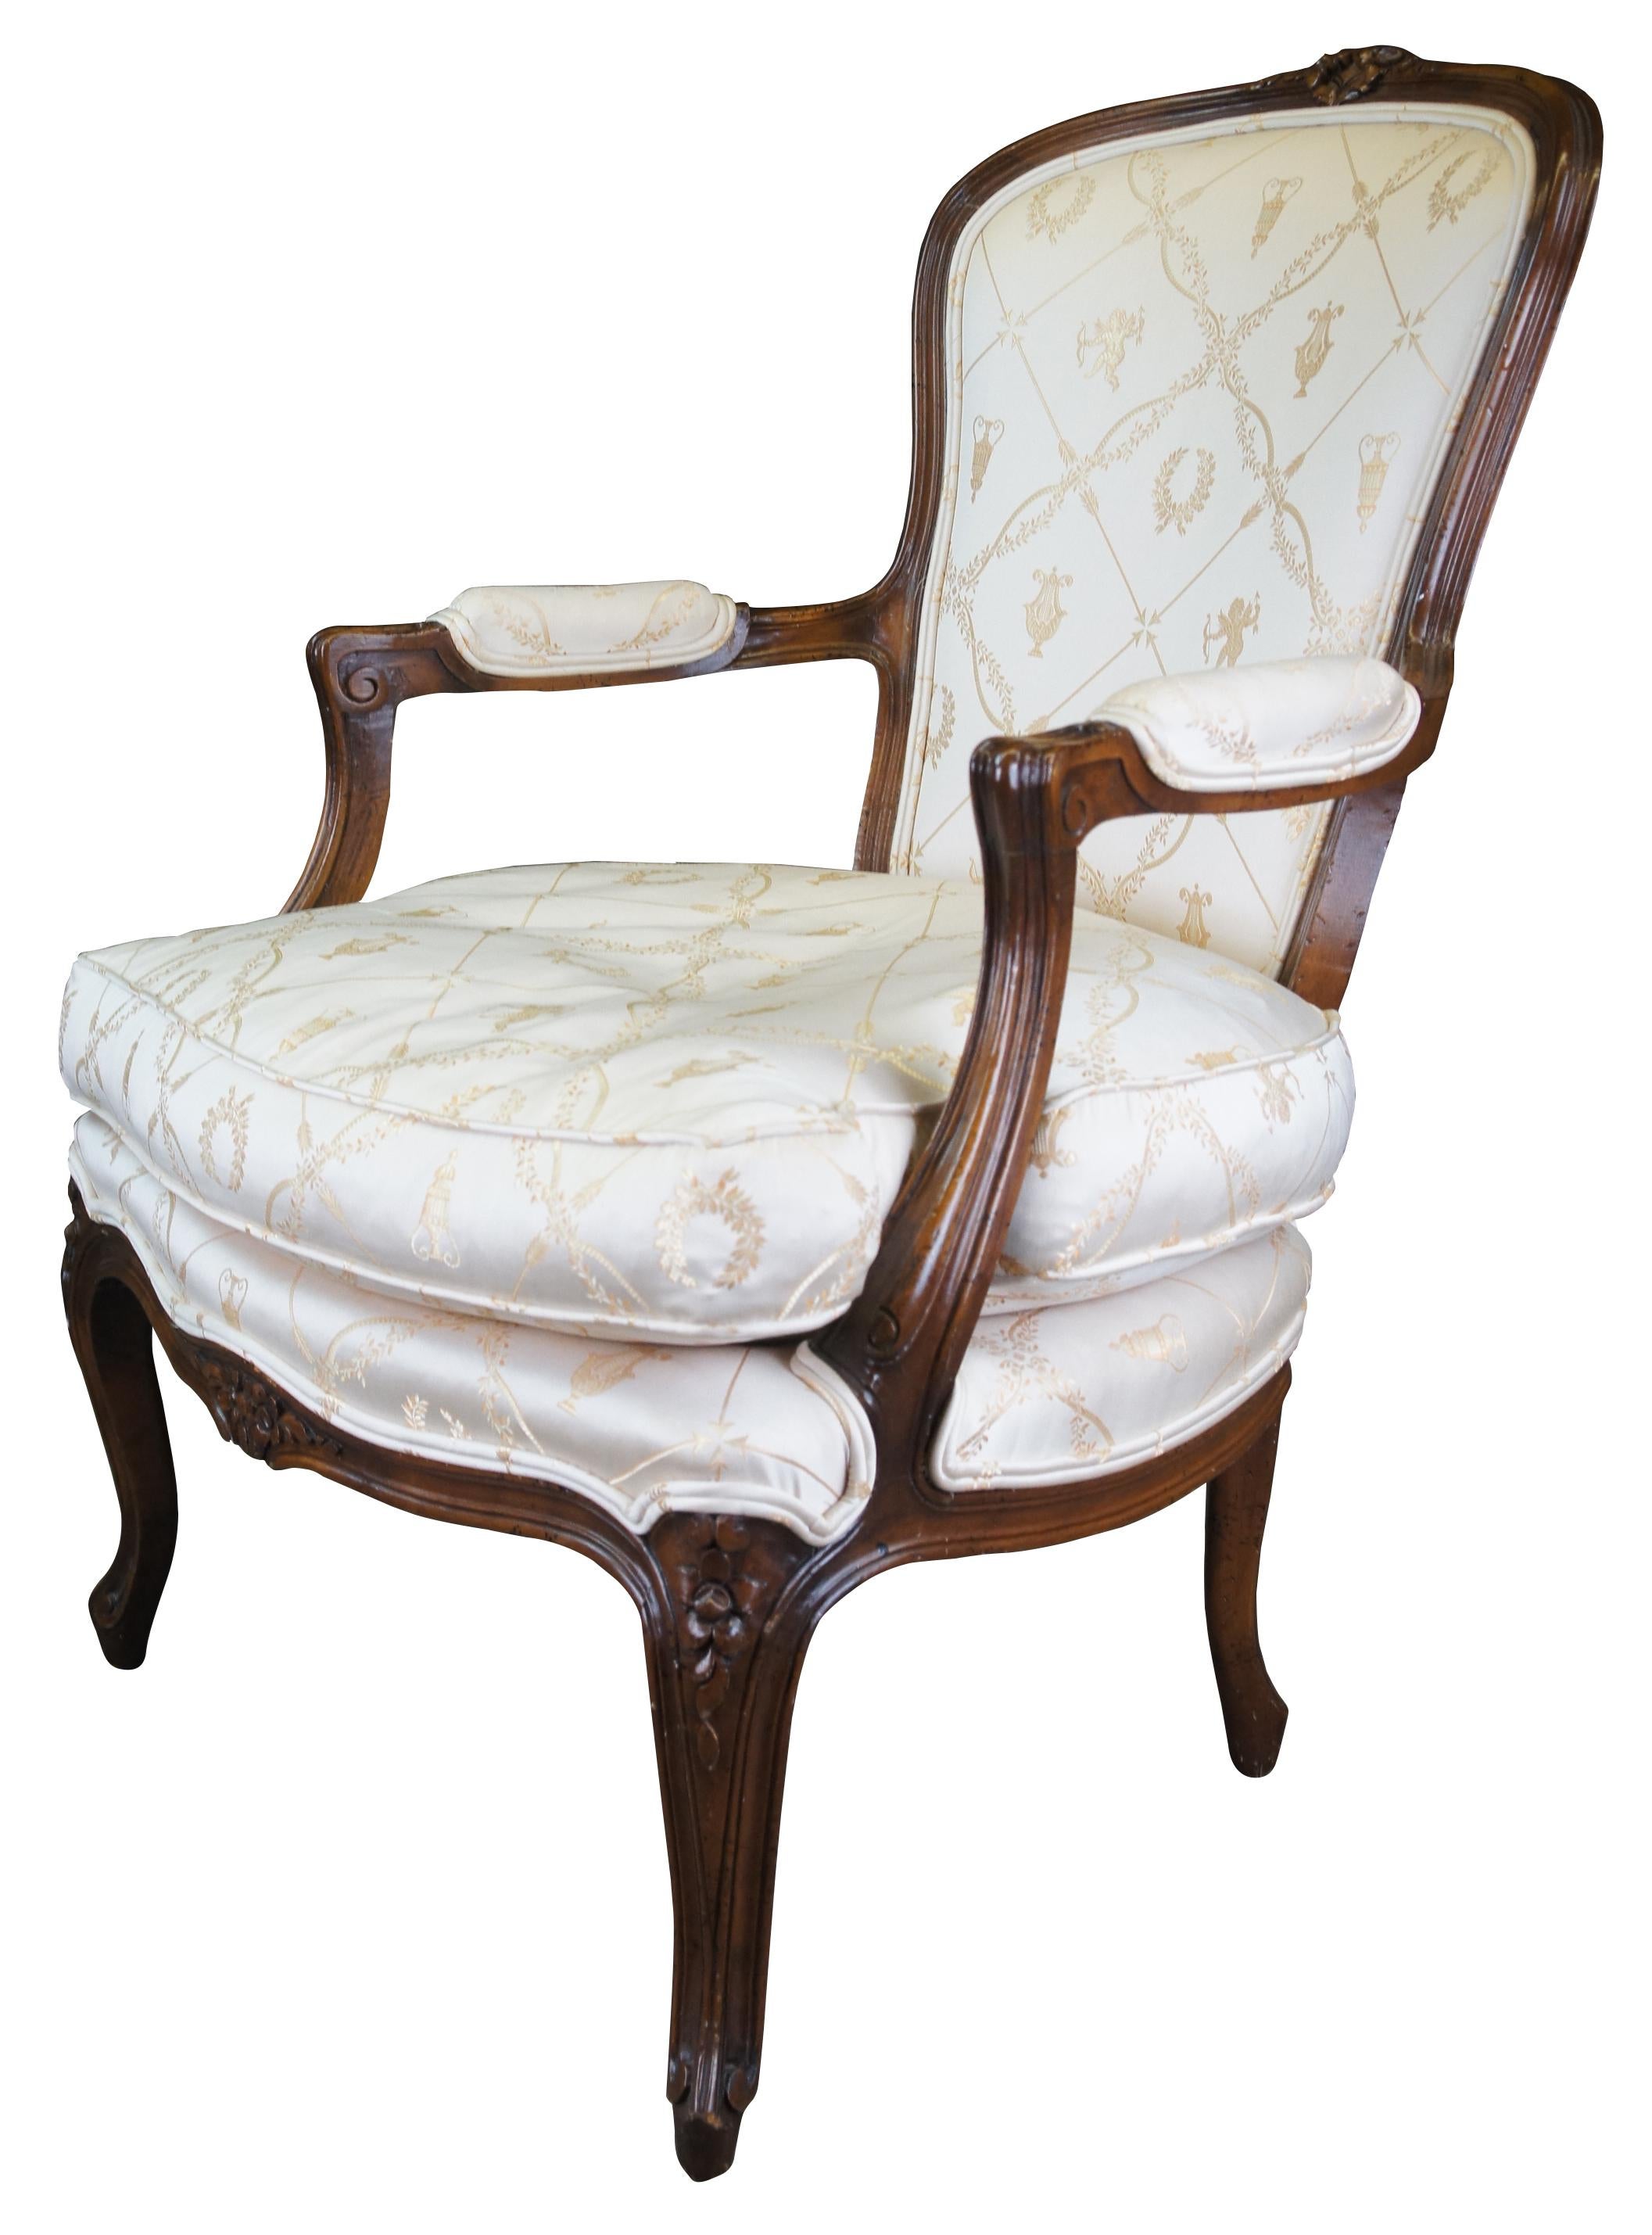 Ein exquisiter französischer Fauteuil-Stuhl von W & J Sloane Inc. Hergestellt aus natürlichem Nussbaum mit Blattschnitzereien, gepolsterten verschnörkelten Armen und Cabriole-Beinen. Der Stuhl ist mit einem wunderschönen klassischen Stoff bezogen,